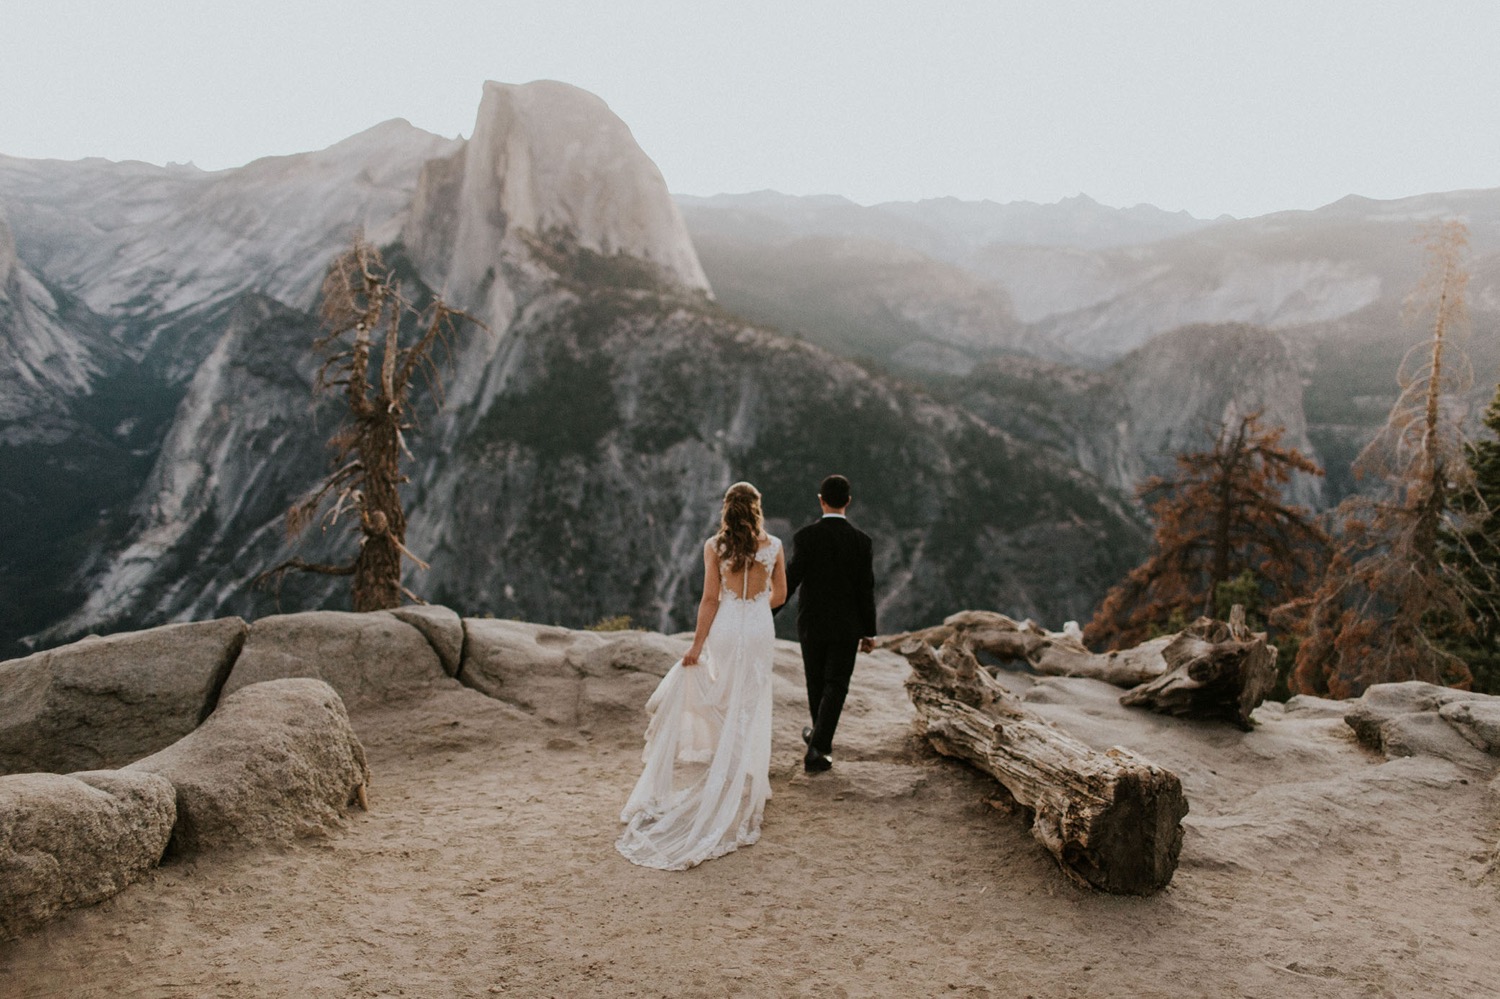 How to Become a Destination Wedding Photographer